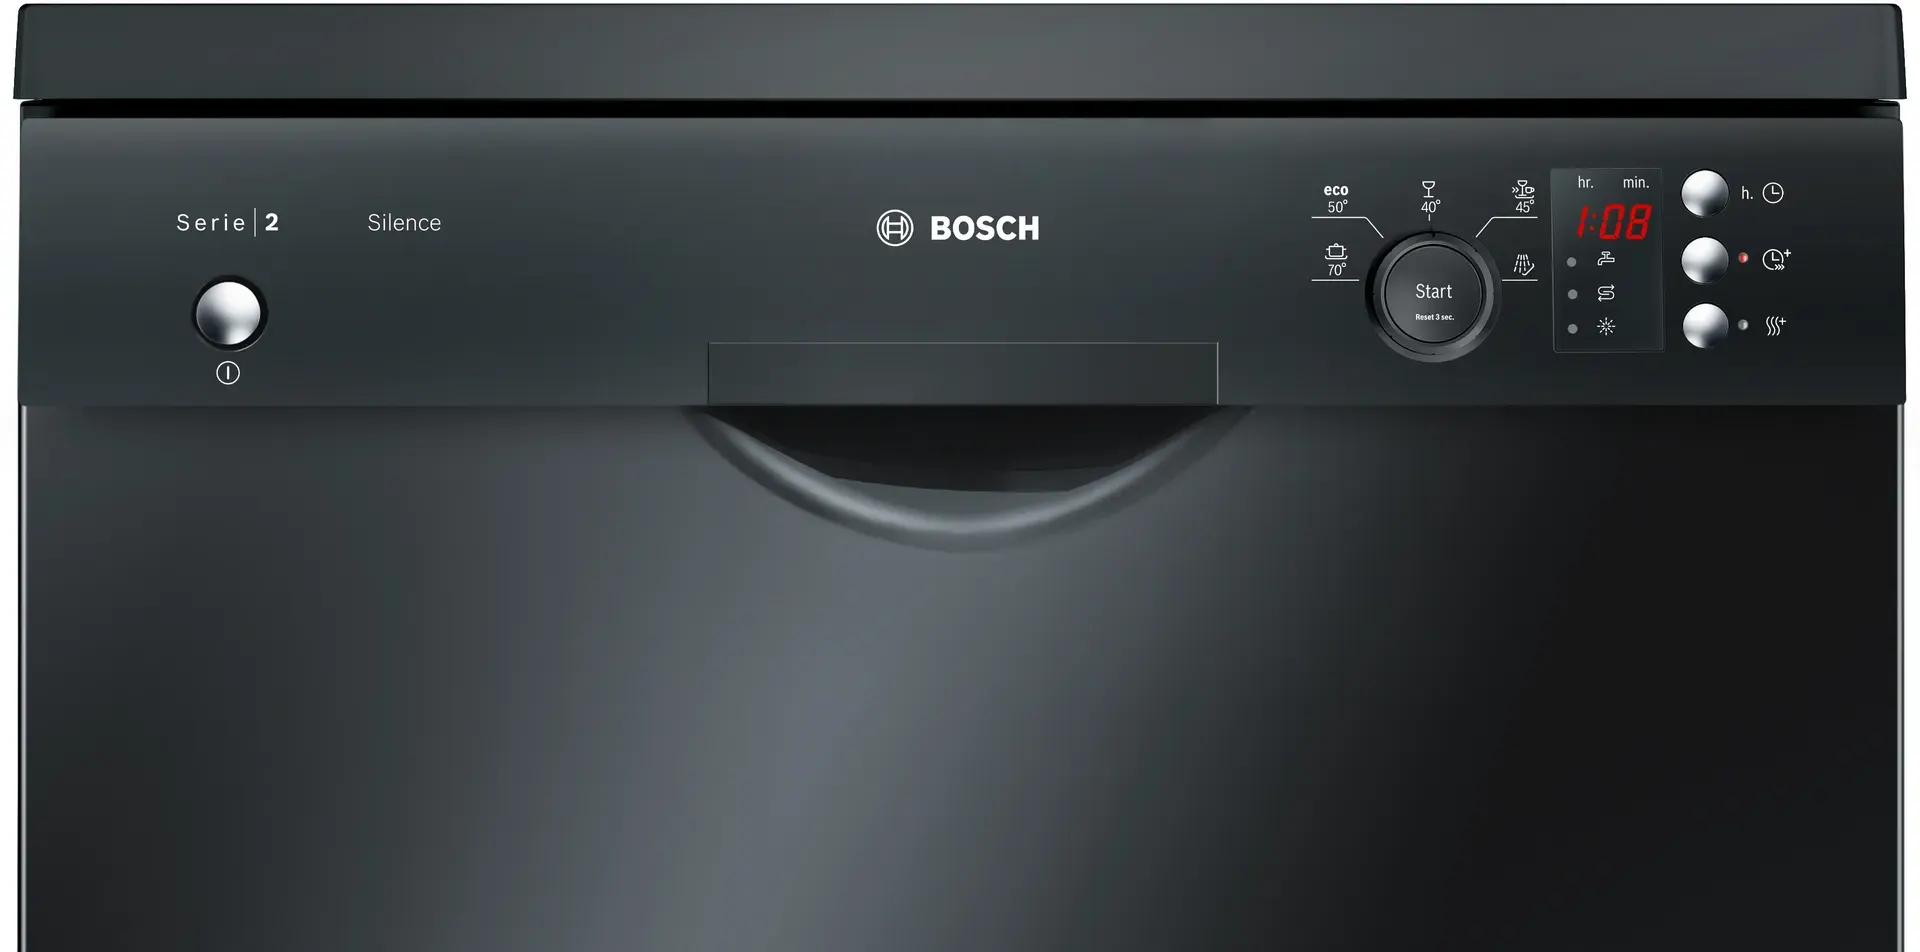 Bosch series 2 silence